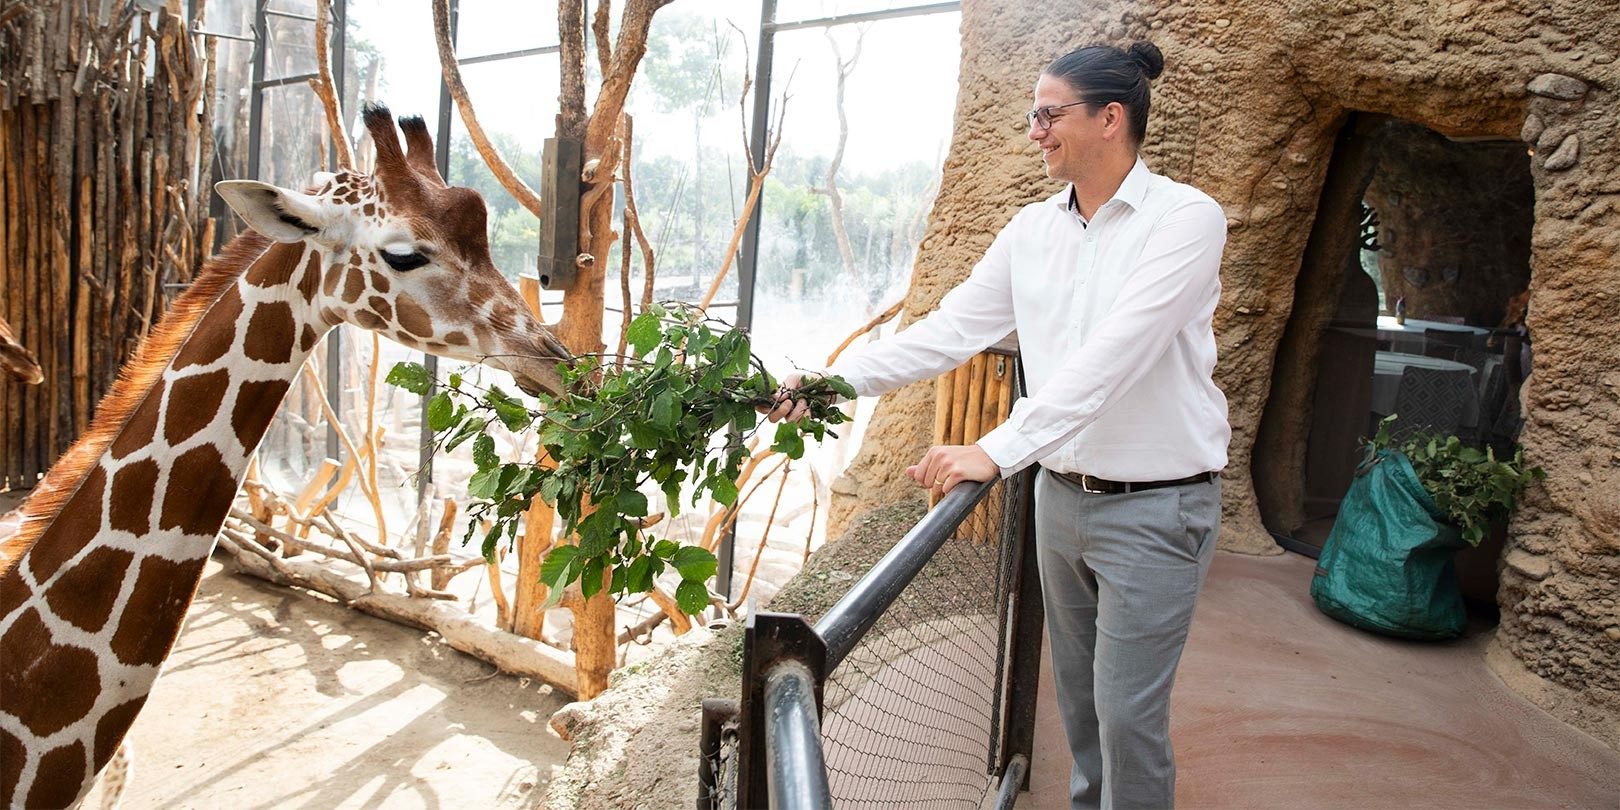 Un homme avec des lunettes nourrit une girafe